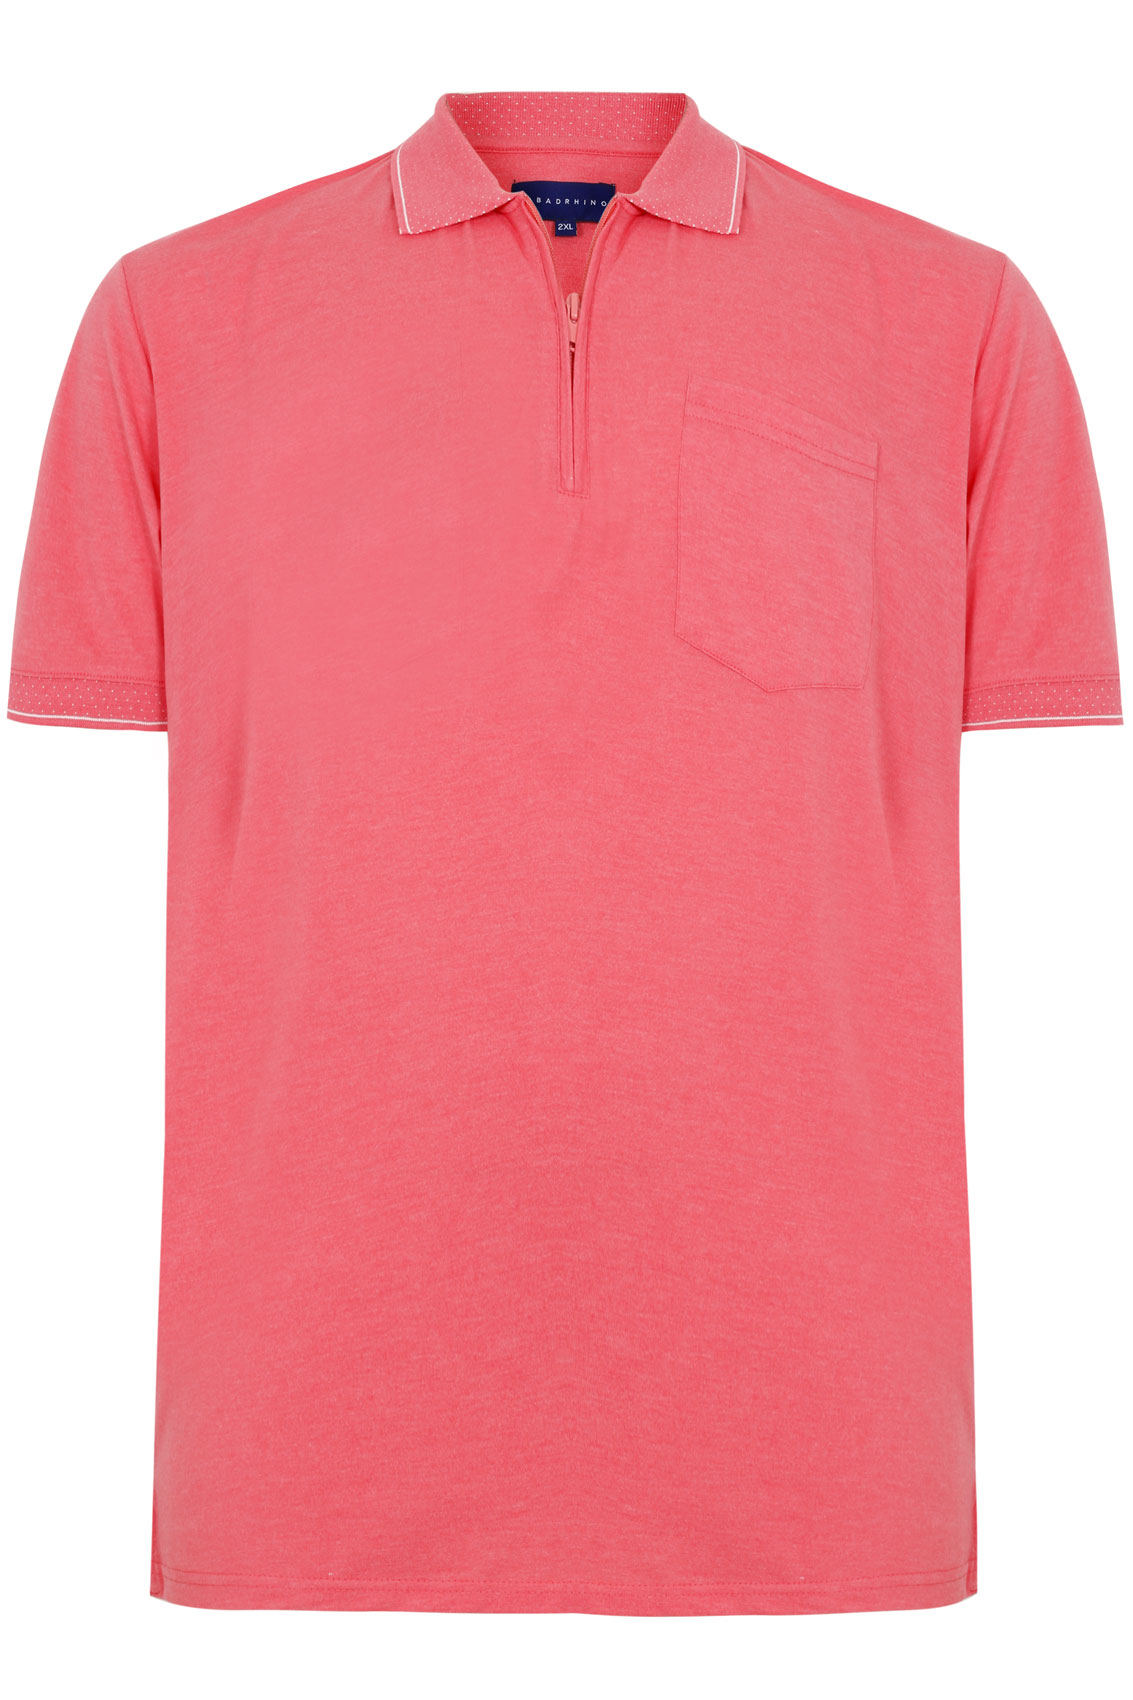 BadRhino Pink Short Sleeve Zip Neck Polo Shirt Extra large sizes M,L,XL ...